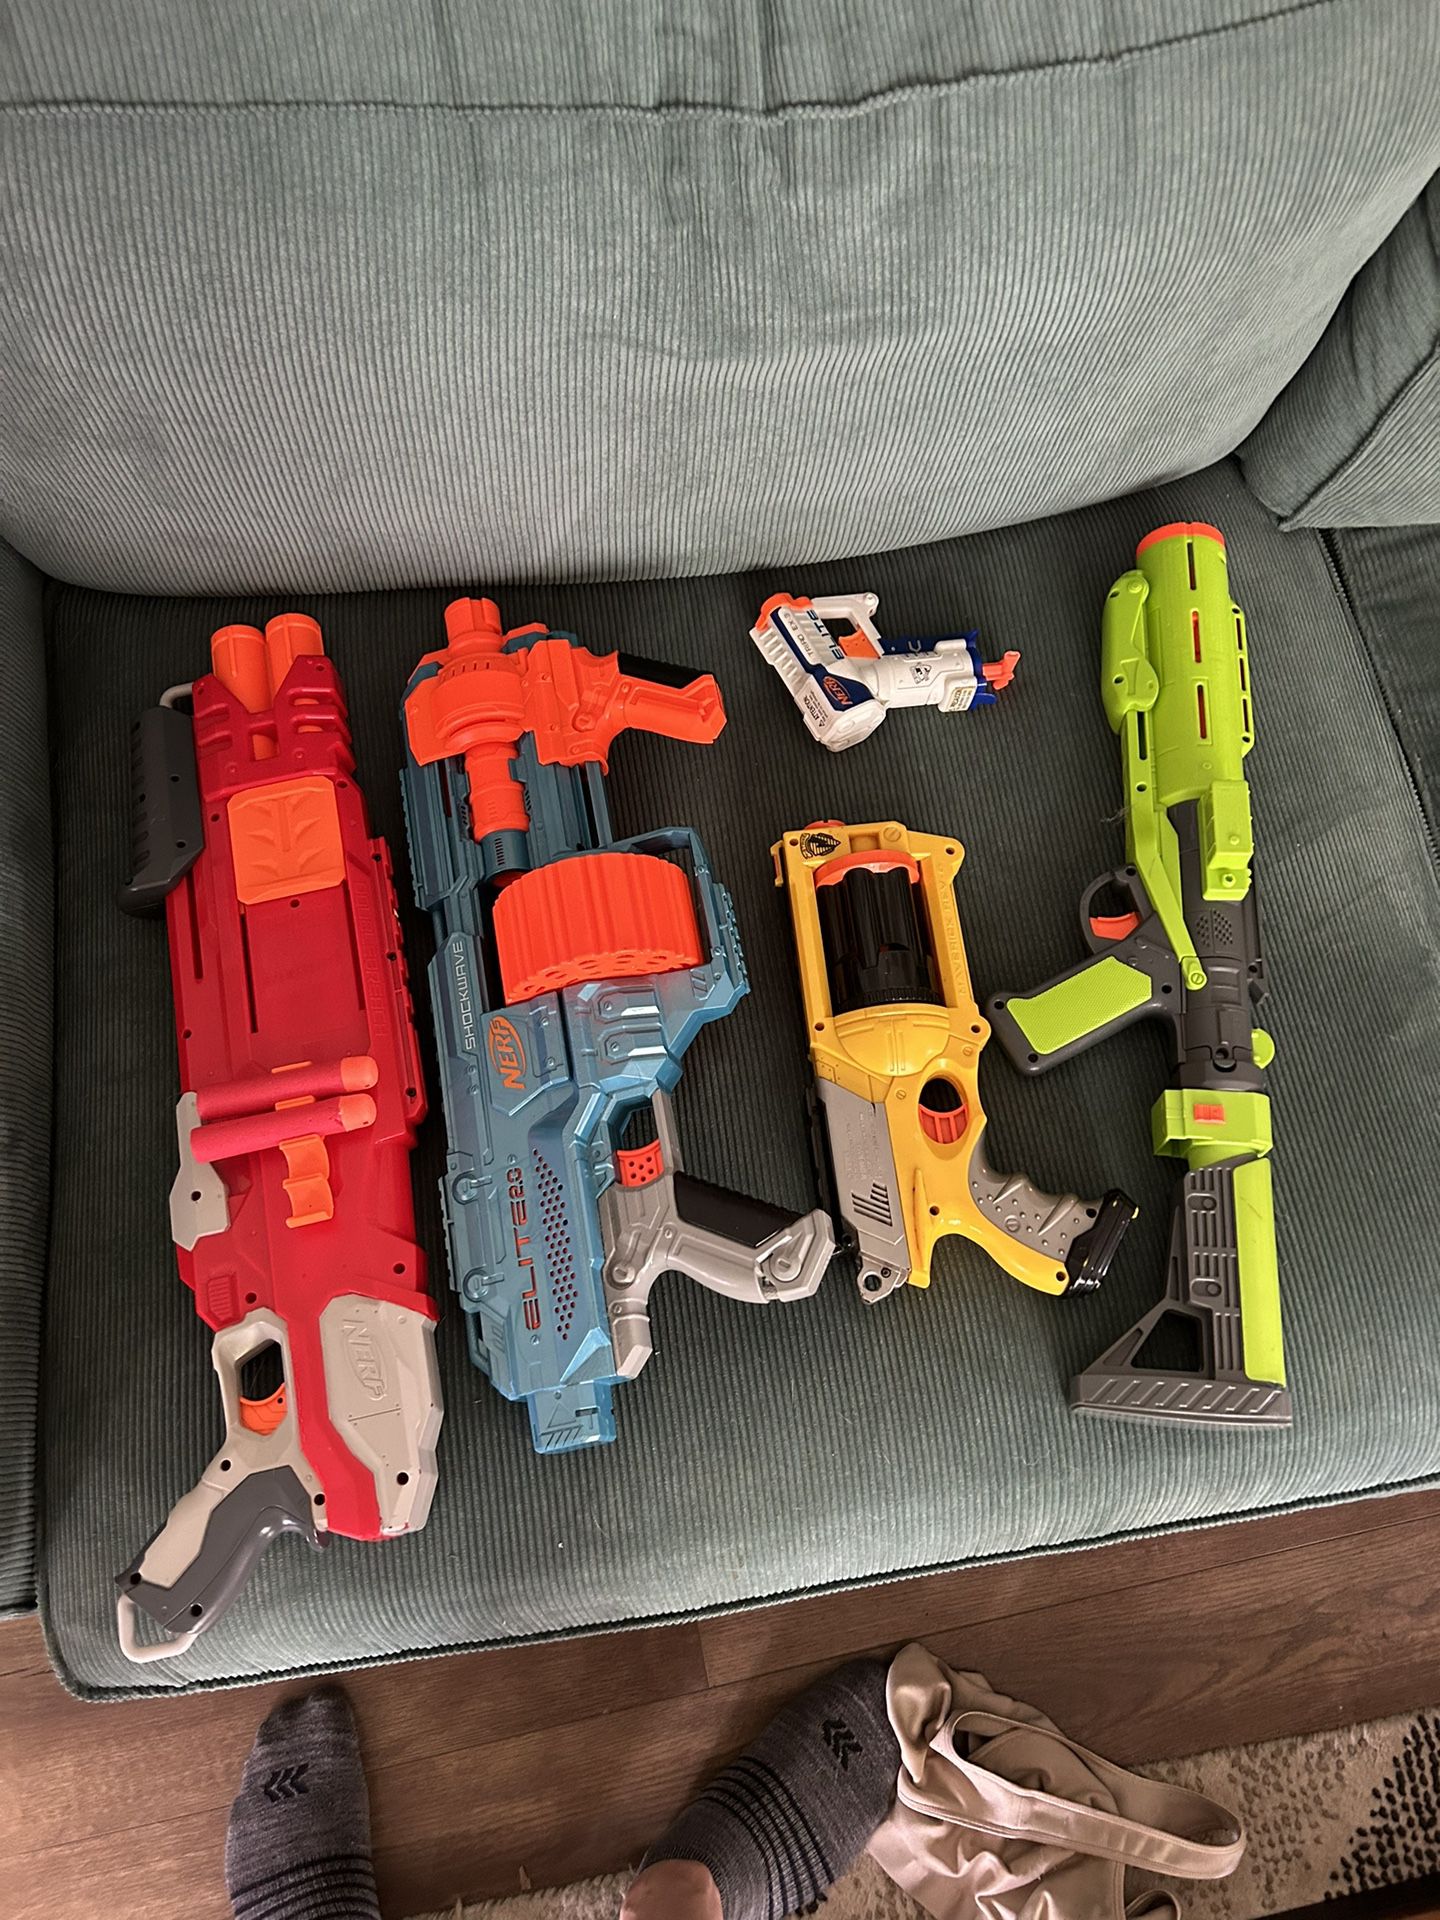 Assorted Nerf guns.